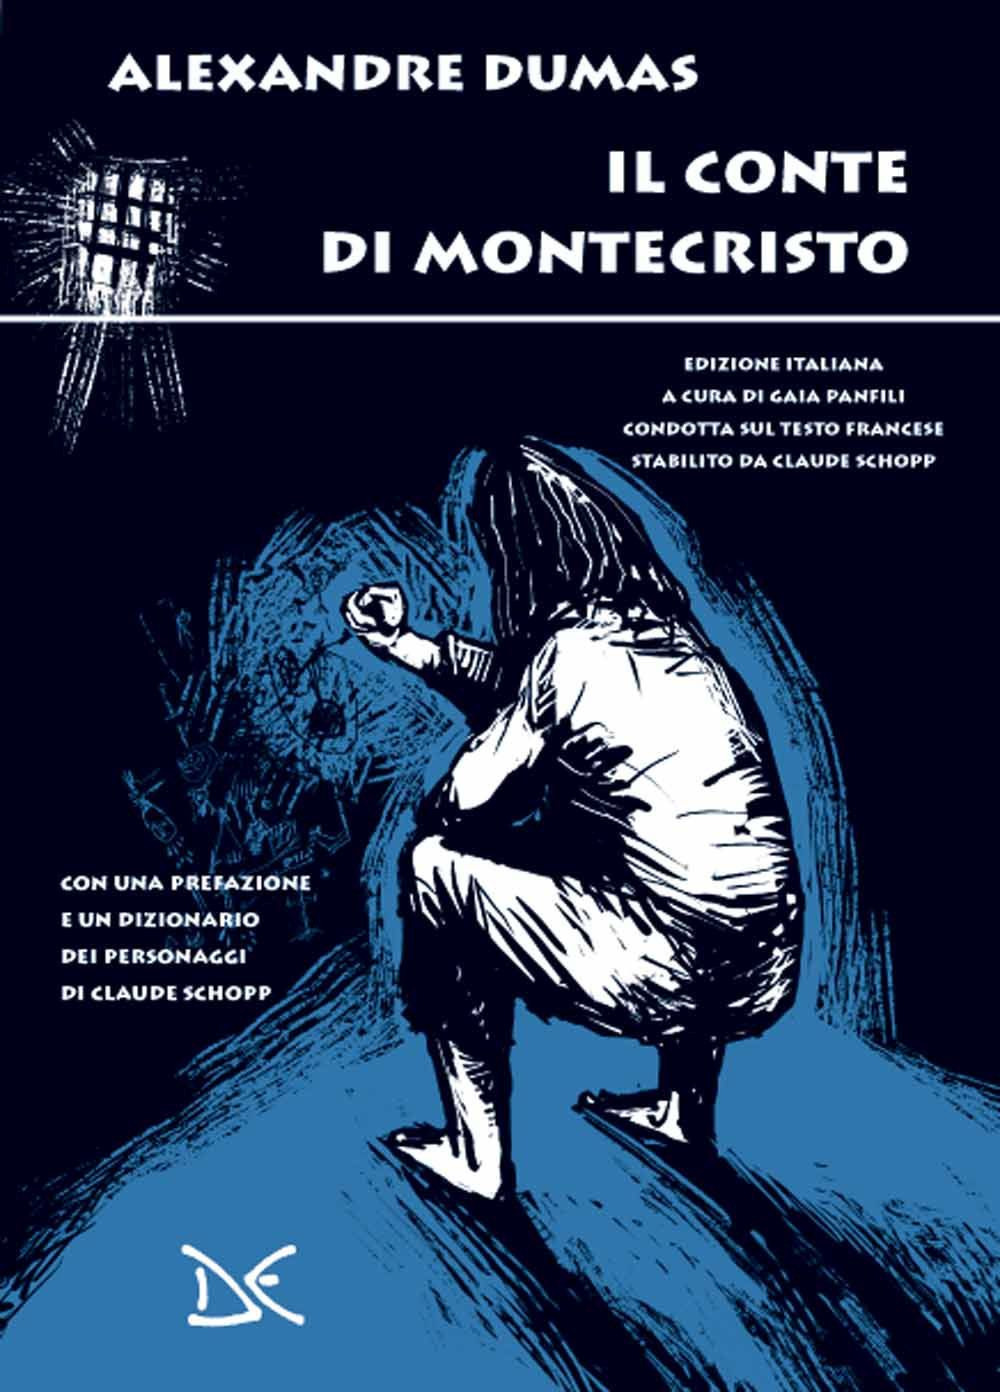 Libri Alexandre Dumas - Il Conte Di Montecristo NUOVO SIGILLATO, EDIZIONE DEL 01/04/2021 SUBITO DISPONIBILE